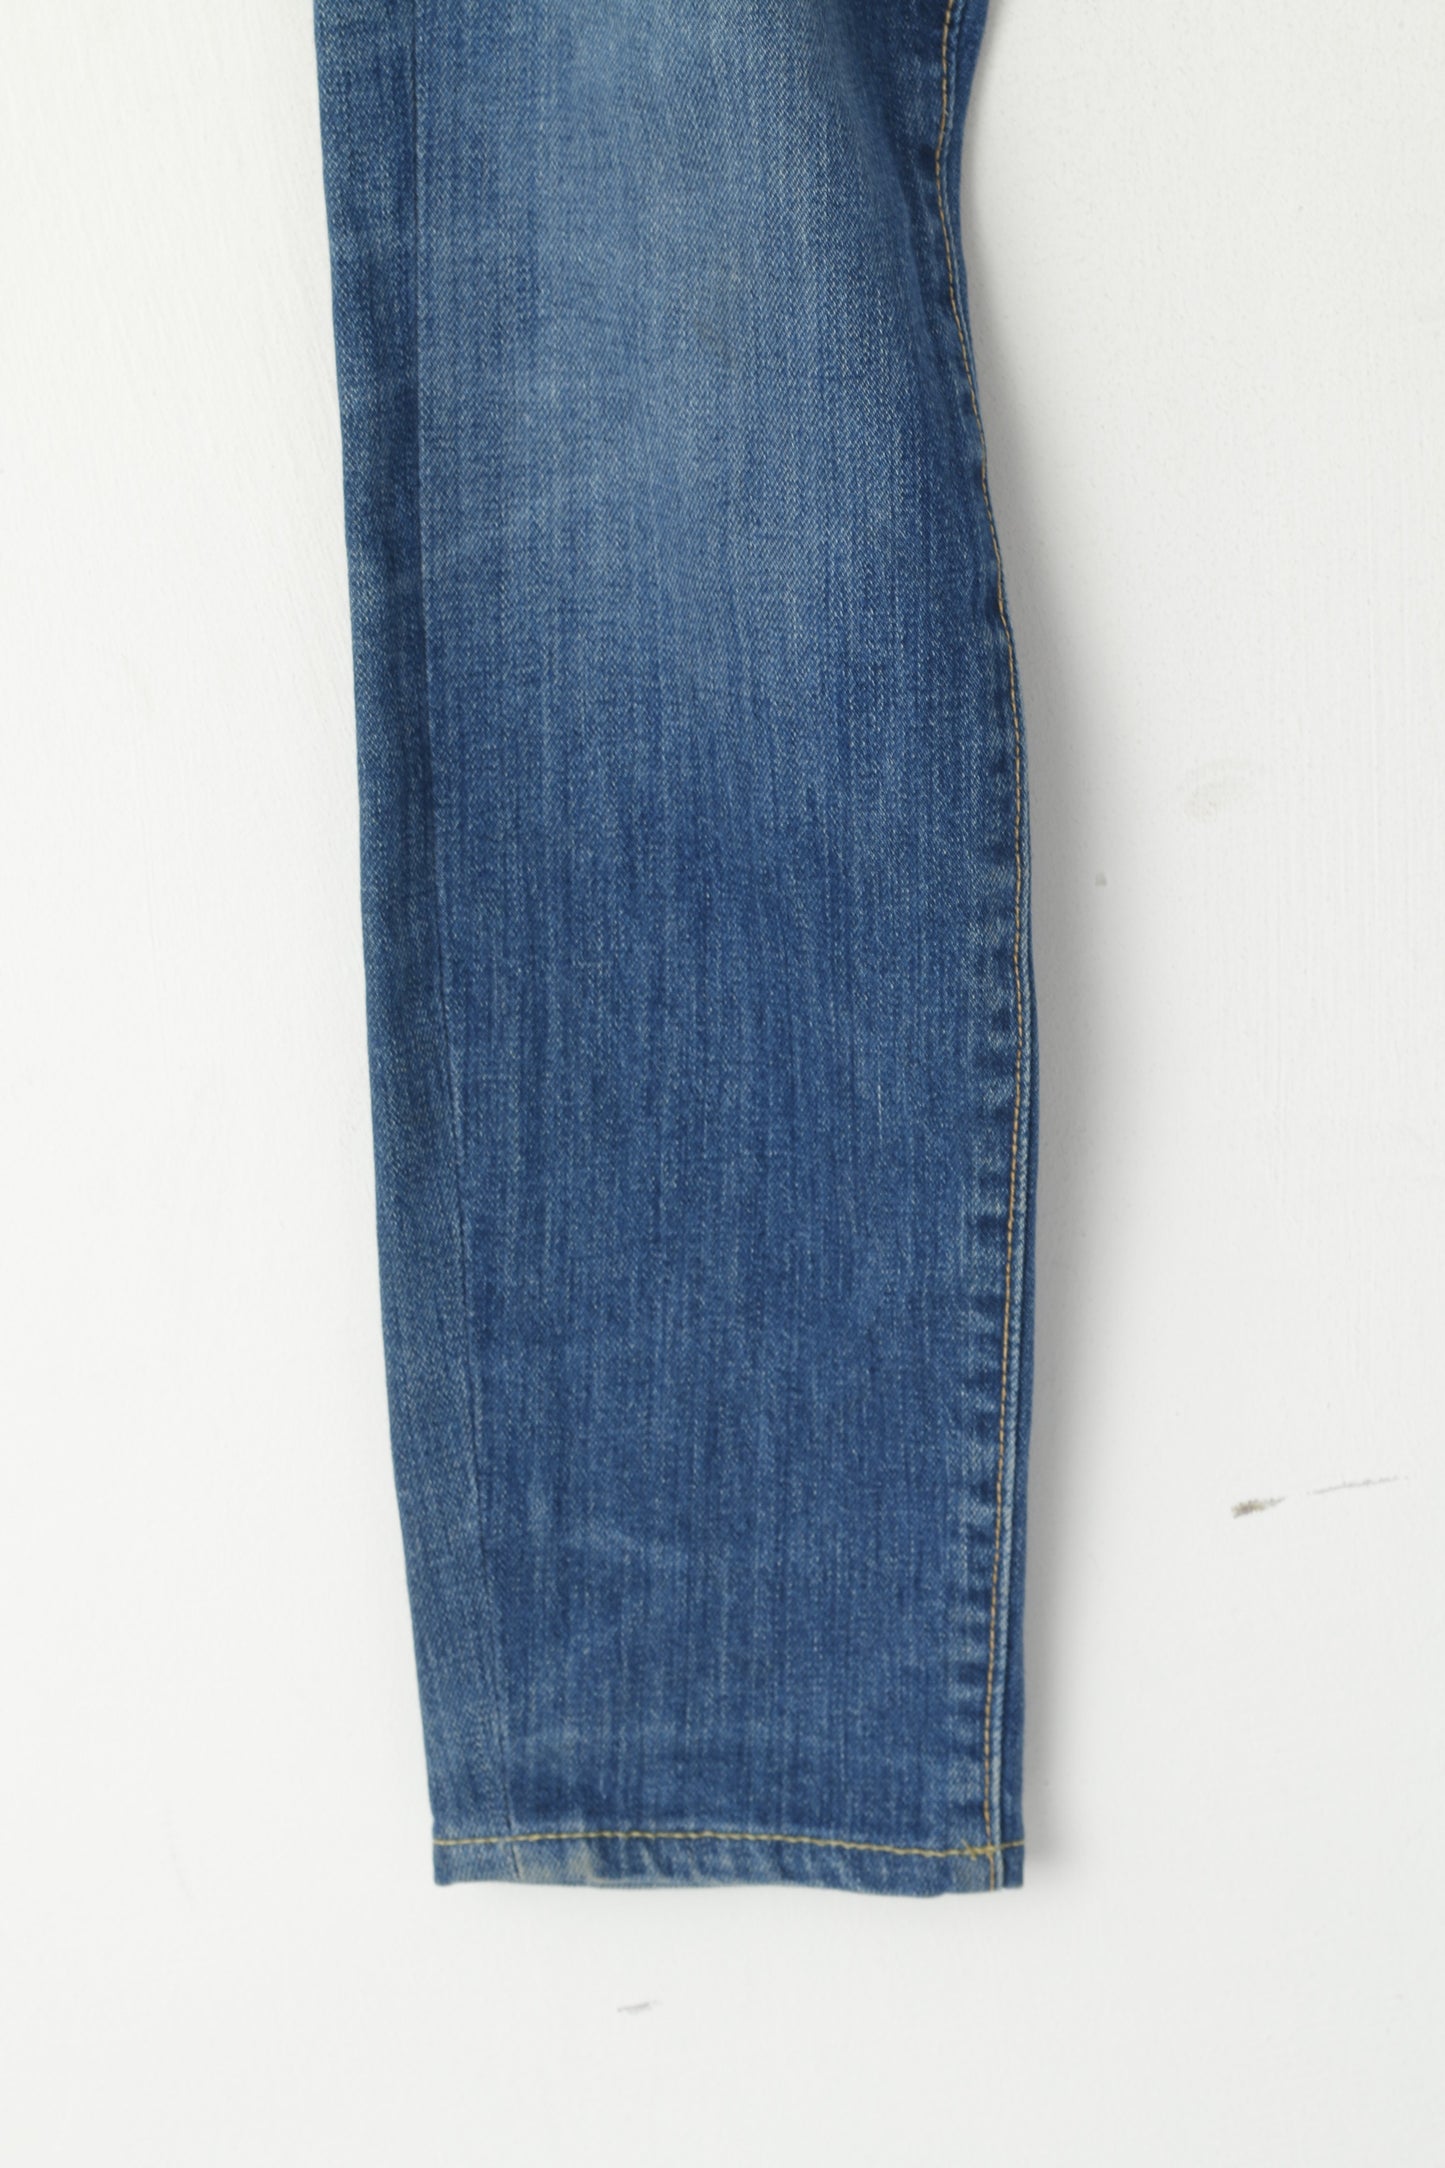 Levi's Men W 34 L 32 Jeans Pantalon Bleu Denim 510 Slim Skinny Fit Pantalon